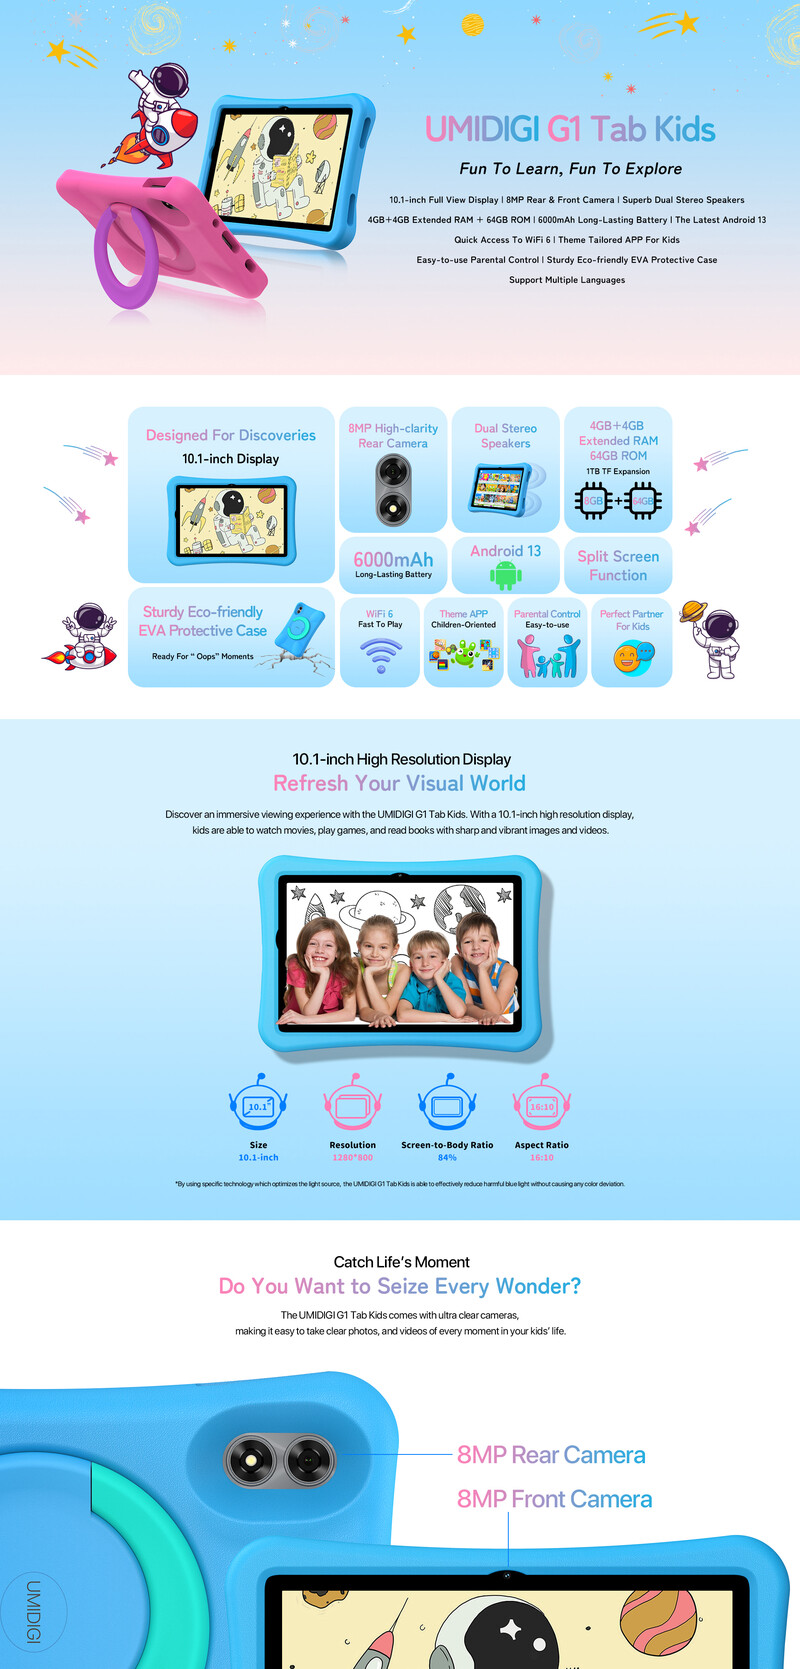 Introducing UMIDIGI G1 Tab Kids - Fun To Learn, Fun To Explore 